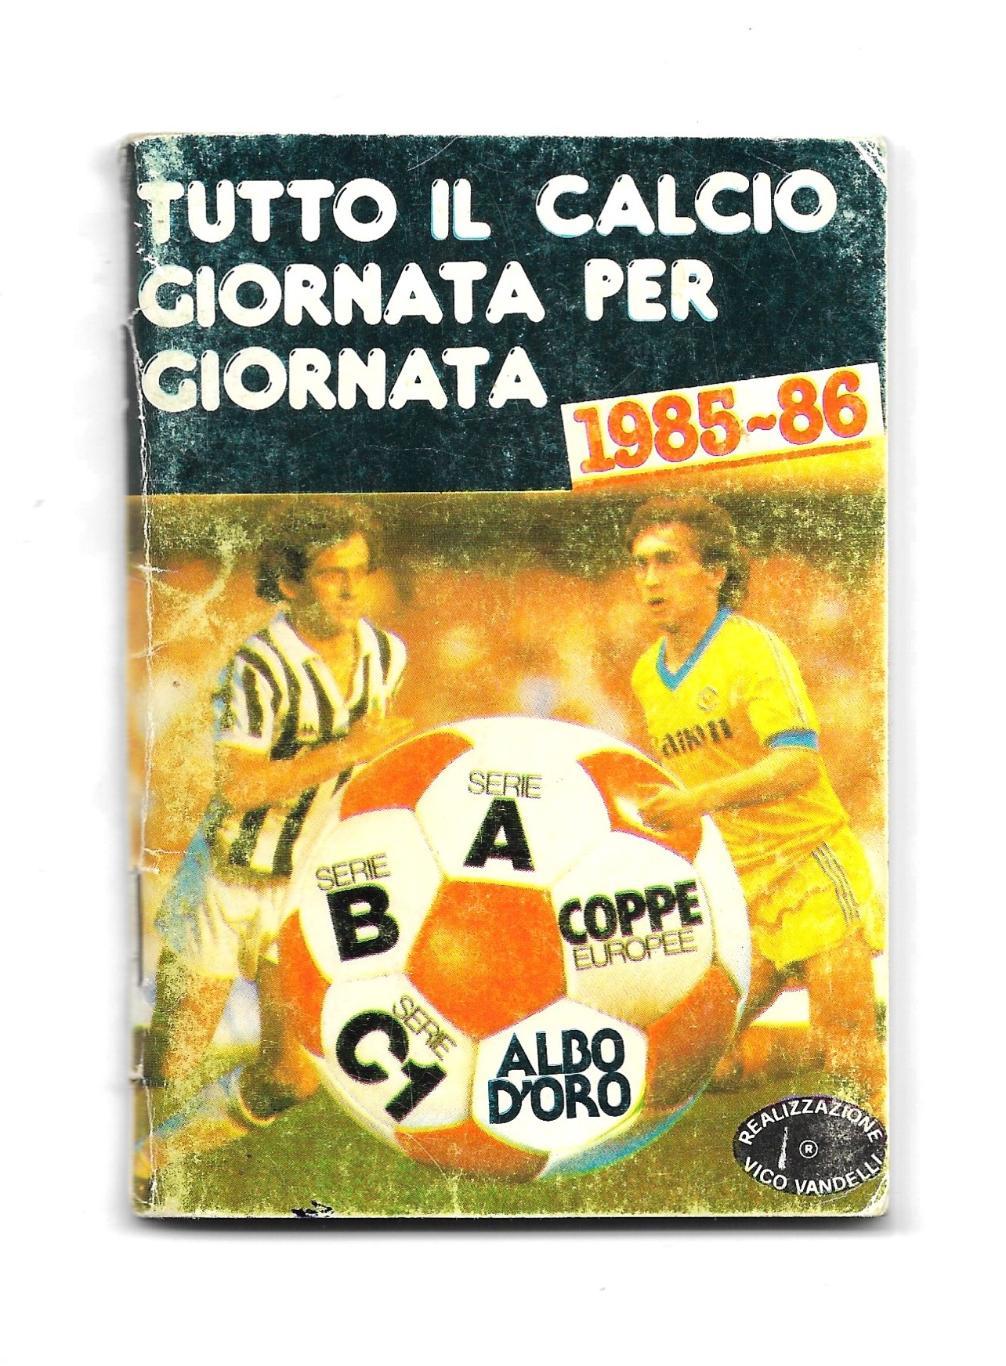 TUTTO_IL_CALCIO_GIORNATA_PER _GIORNATA_1985- 86_Italy